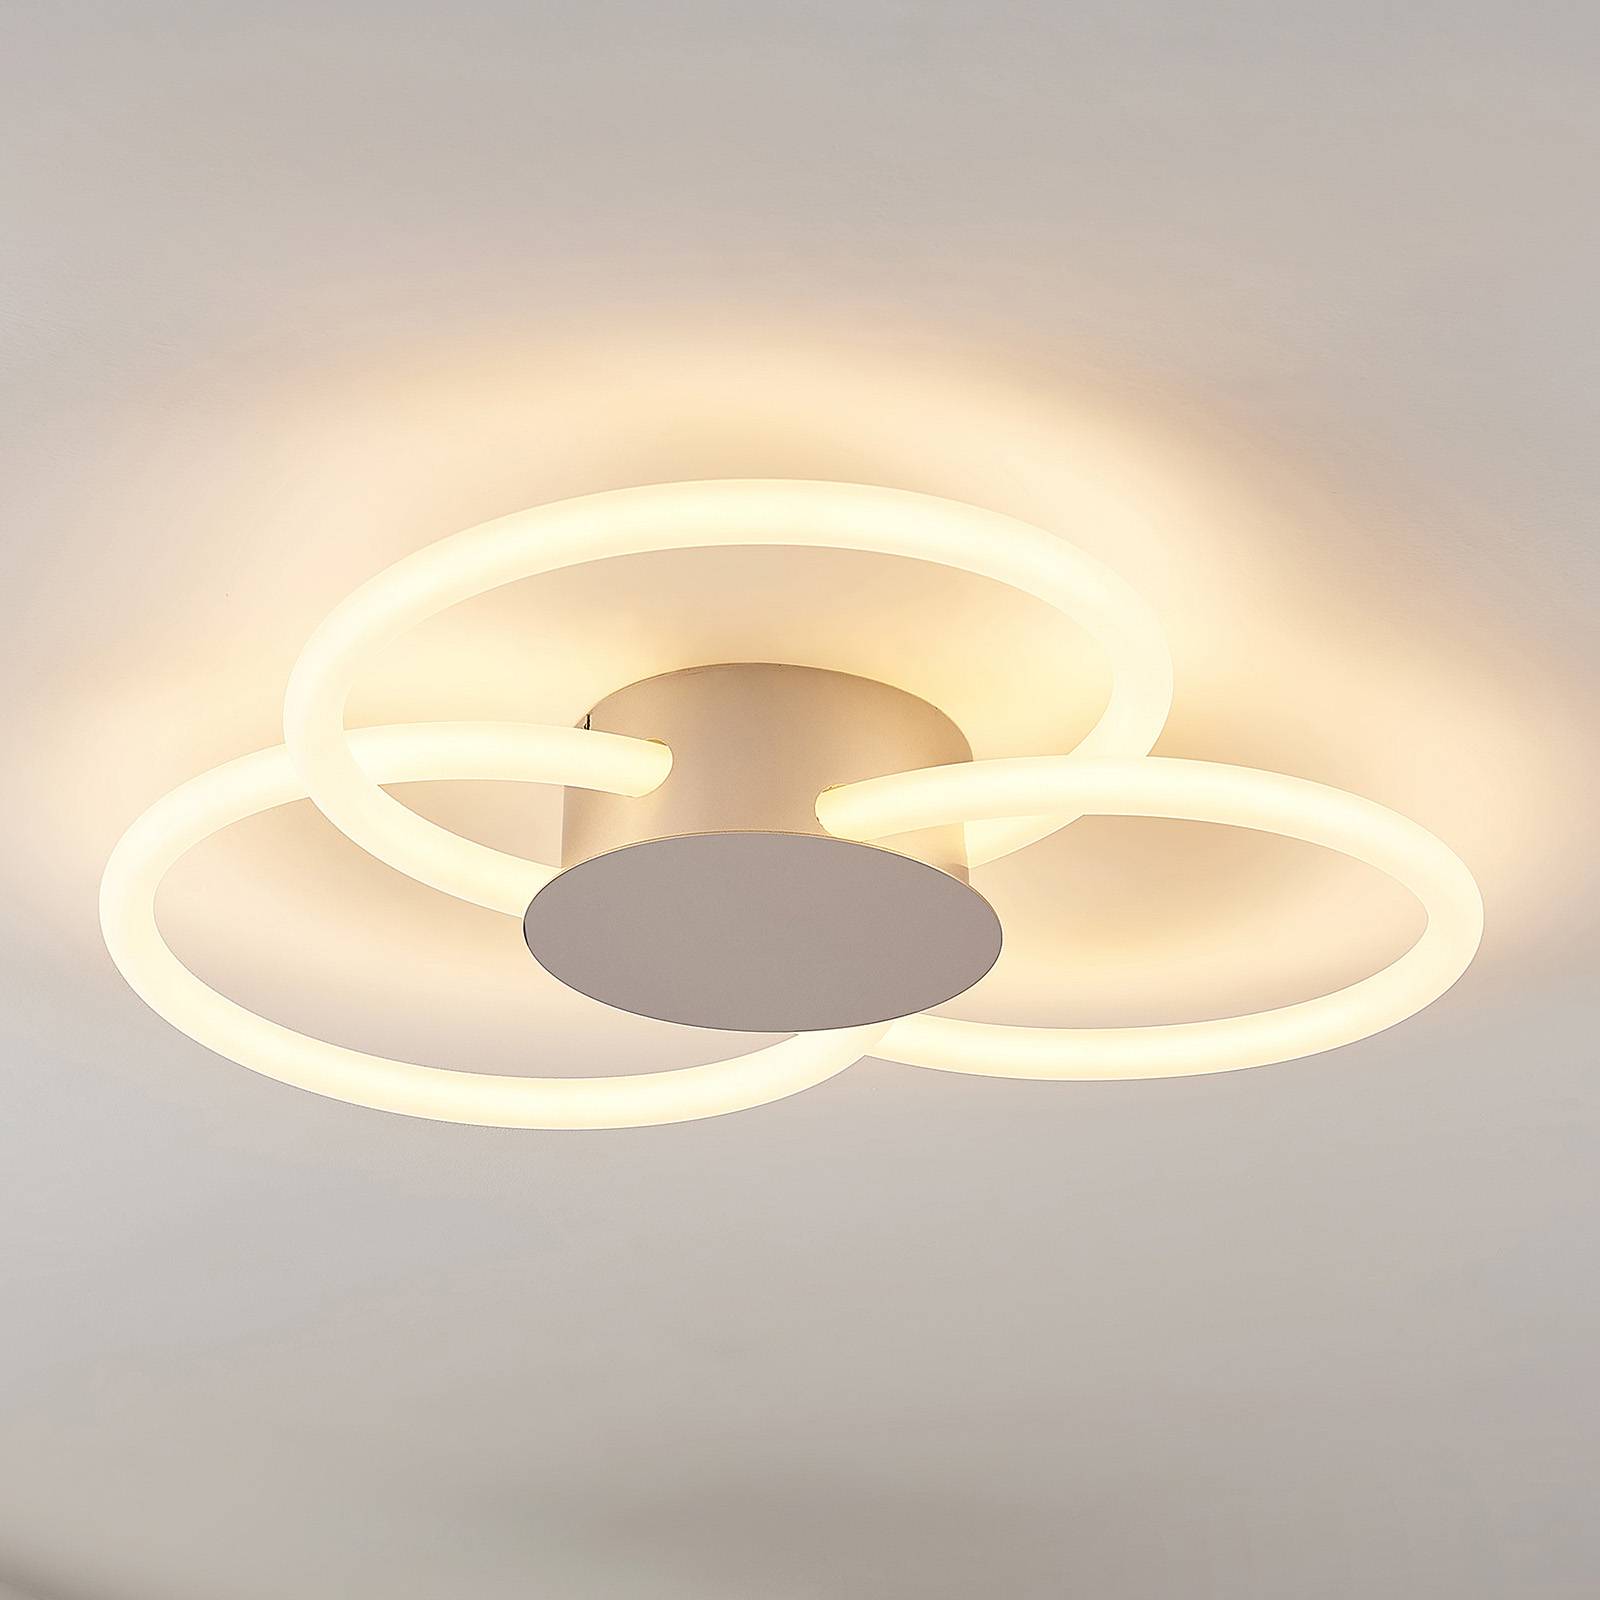 Lucande Clasa LED plafondlamp, 3-lamps